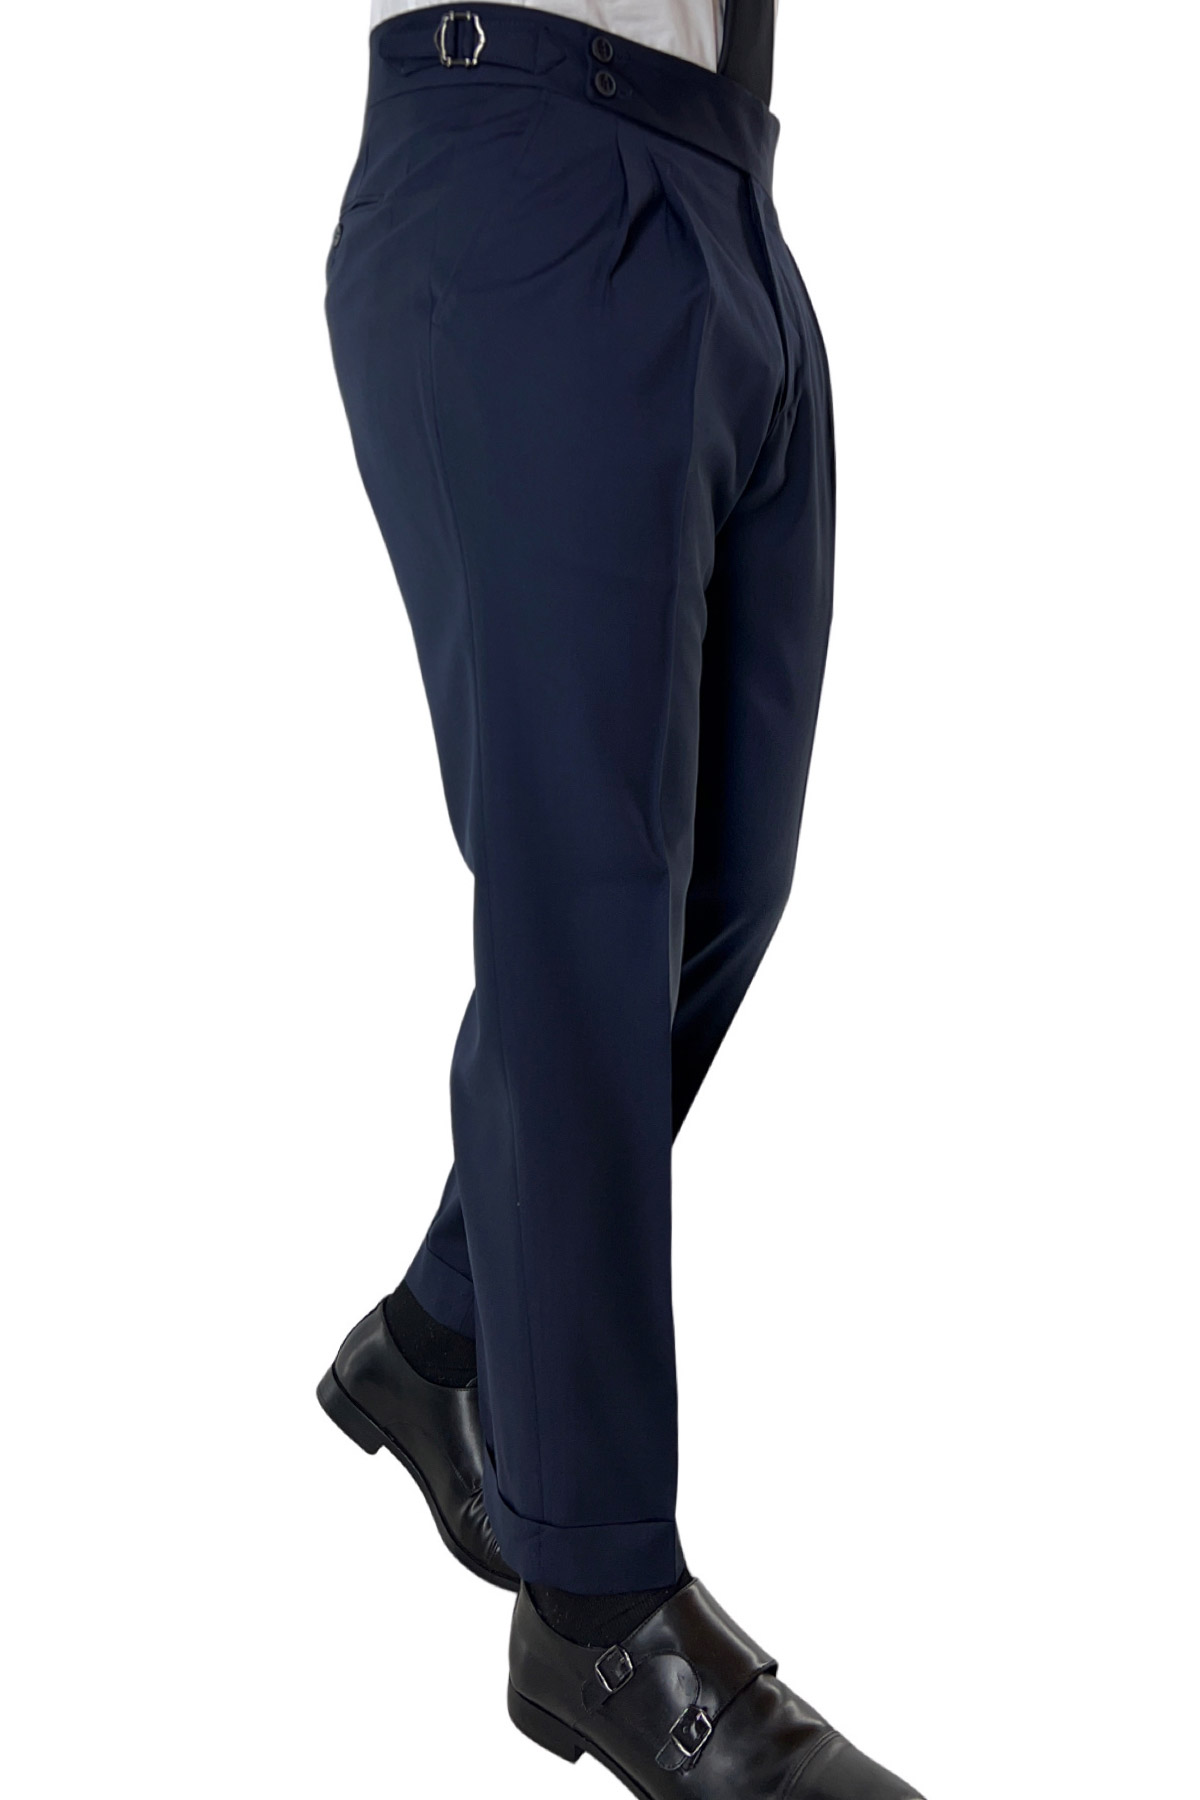 Pantalone uomo Navy blu vita alta doppia pinces in fresco lana misto